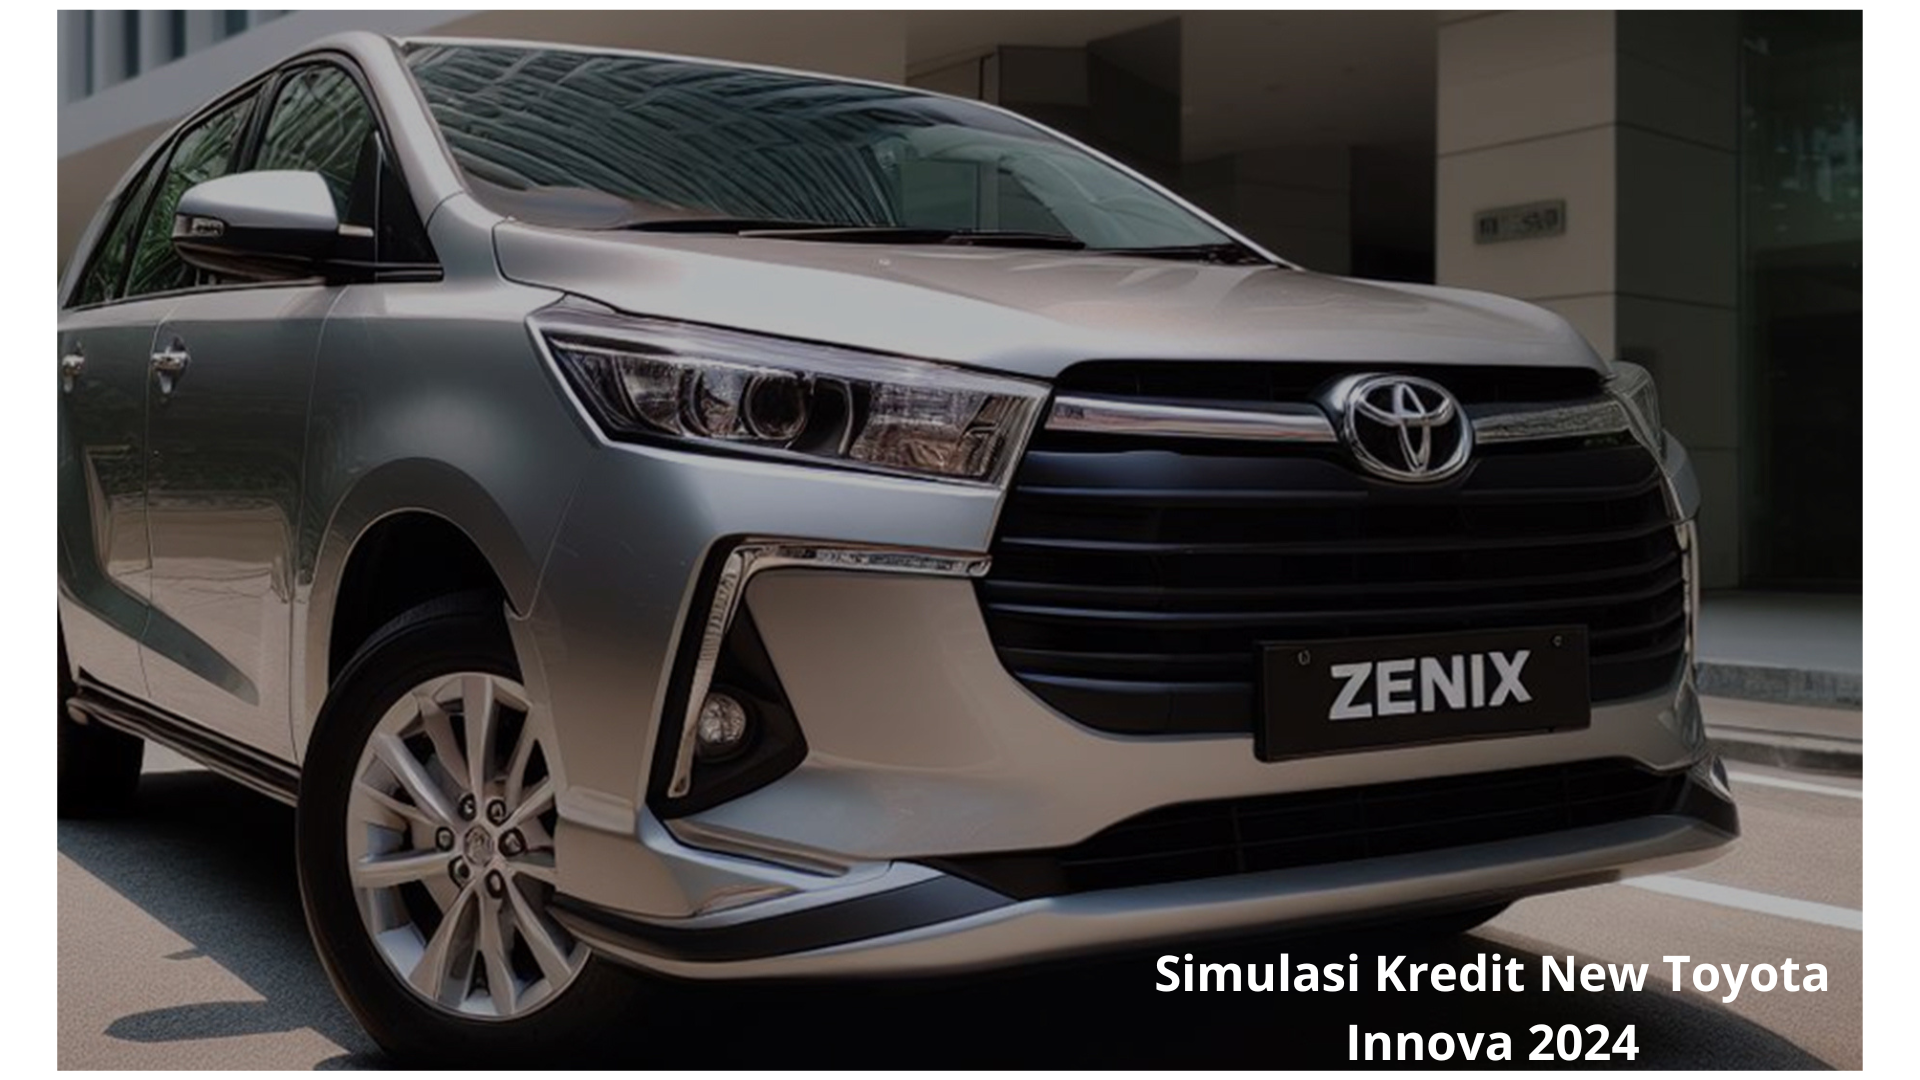 Info Update! Ini Simulasi Kredit New Toyota Innova 2024, Mobil Keluarga Terbaik Bikin Nyaman Bepergian